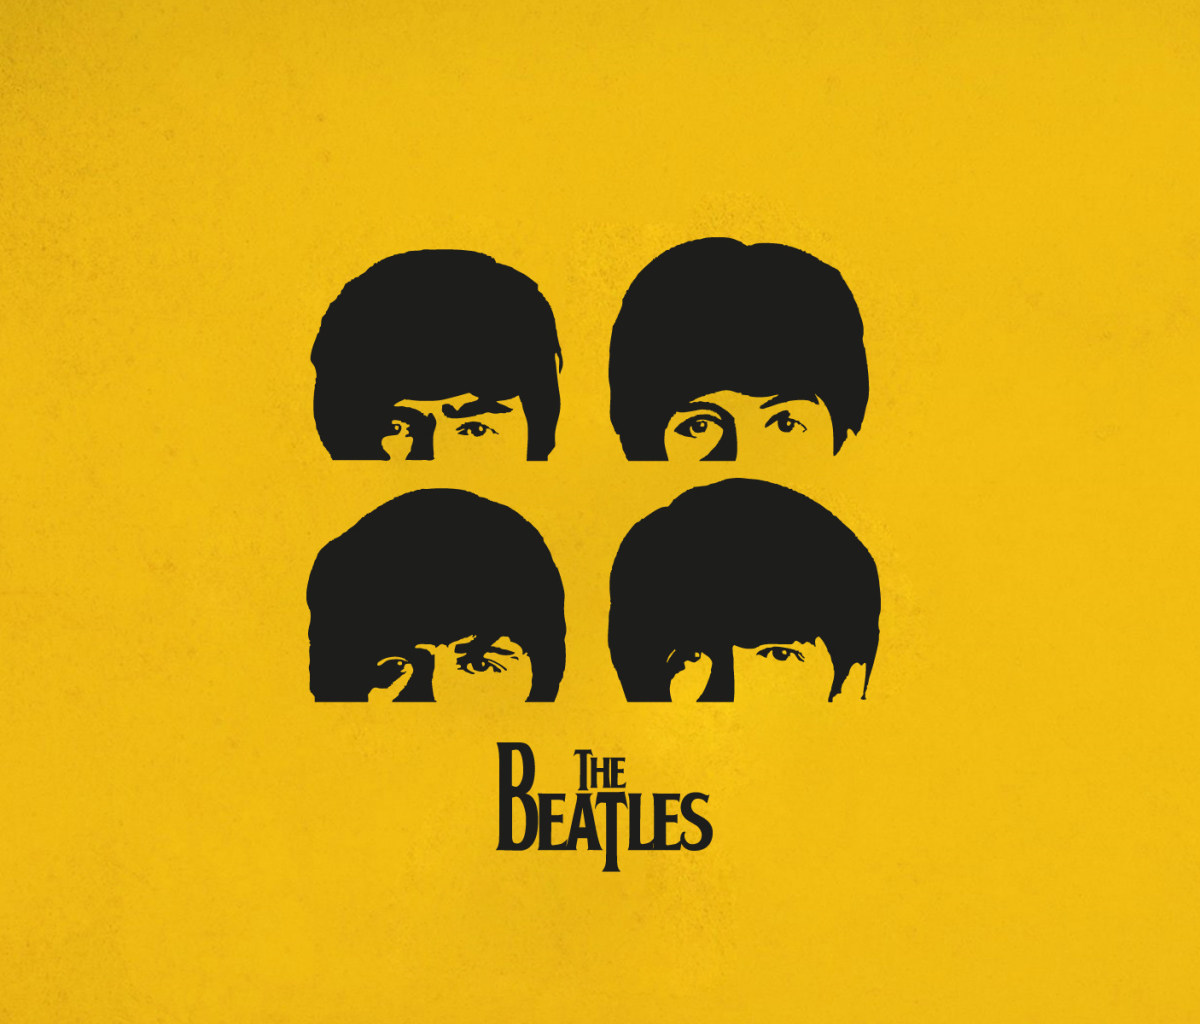 Желтая в песне битлз. Группа Битлз Постер. The Beatles минималистические постеры. Плакат группы Beatles. Группа the Beatles обложка.